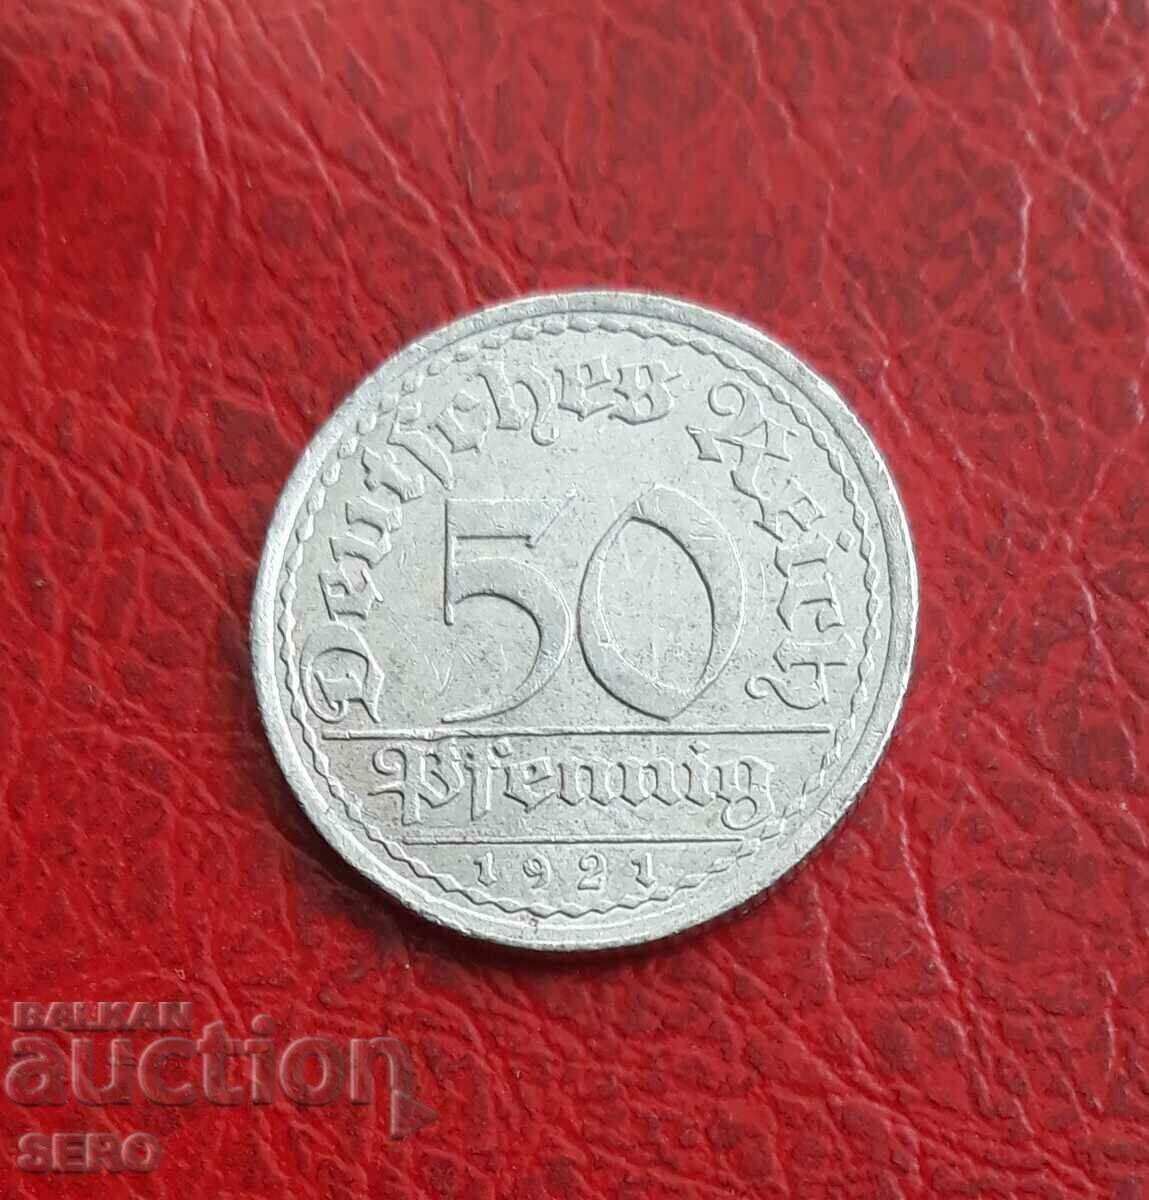 Germany-50 Pfennig 1921 A-Berlin